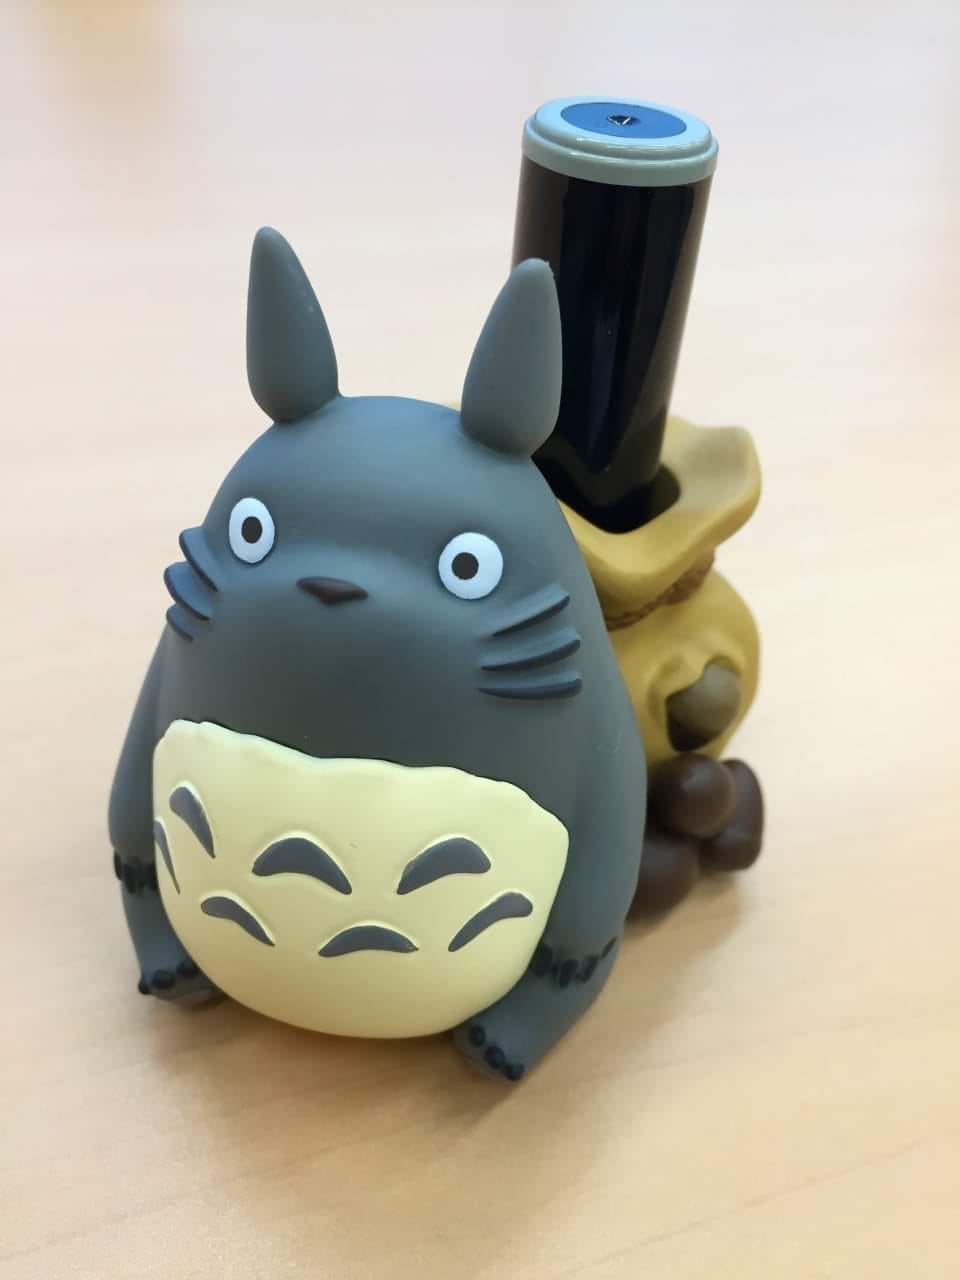 PREORDER ENSKY Studio Ghibli Work IKT-02B My Neighbor Totoro Seal Stand, Large Totoro